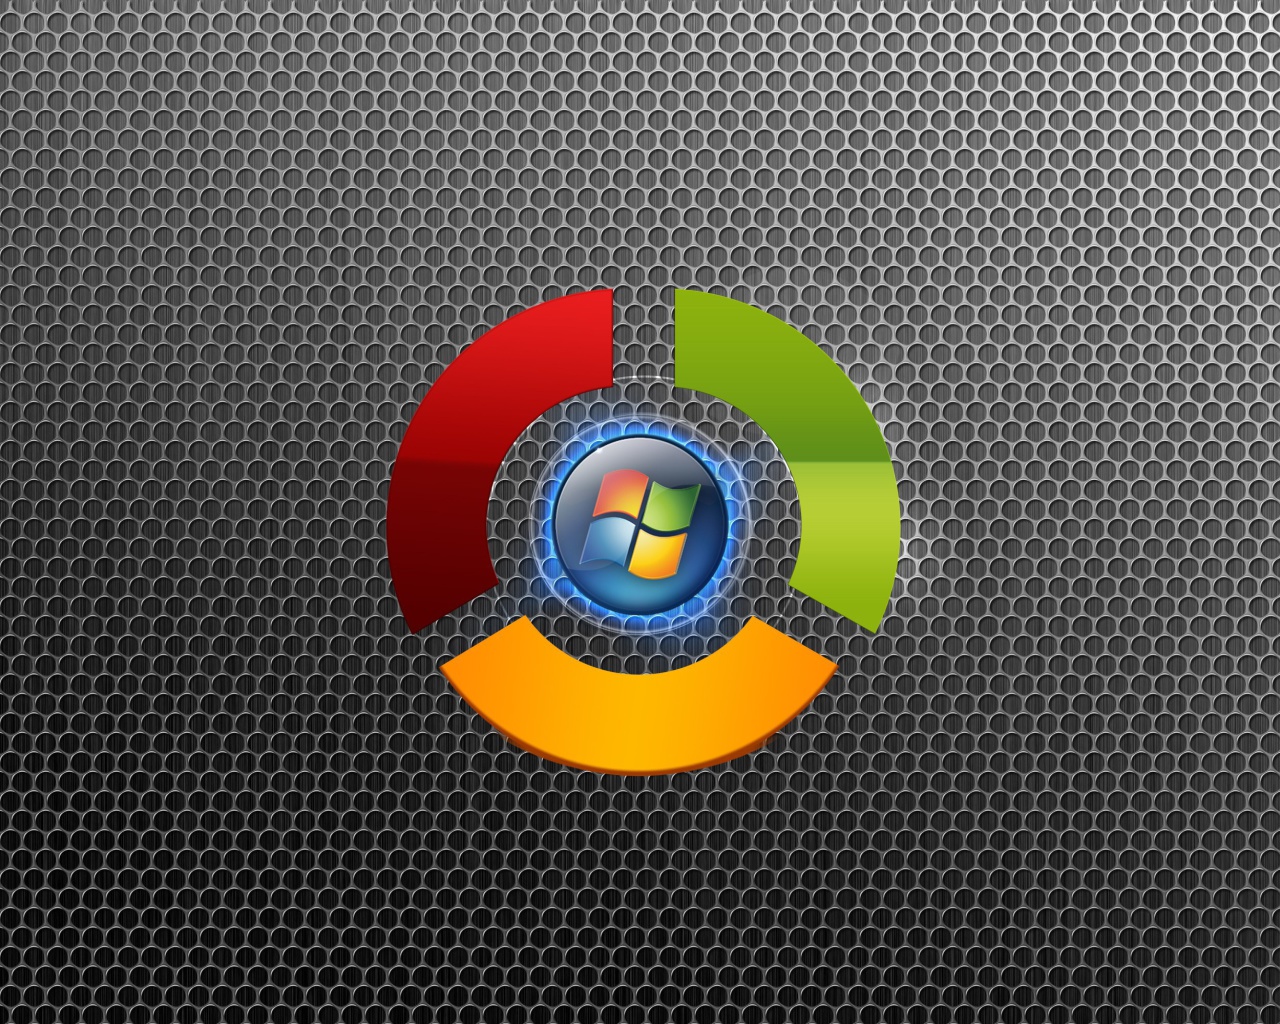 Das Google Chrome OS Wallpaper 1280x1024